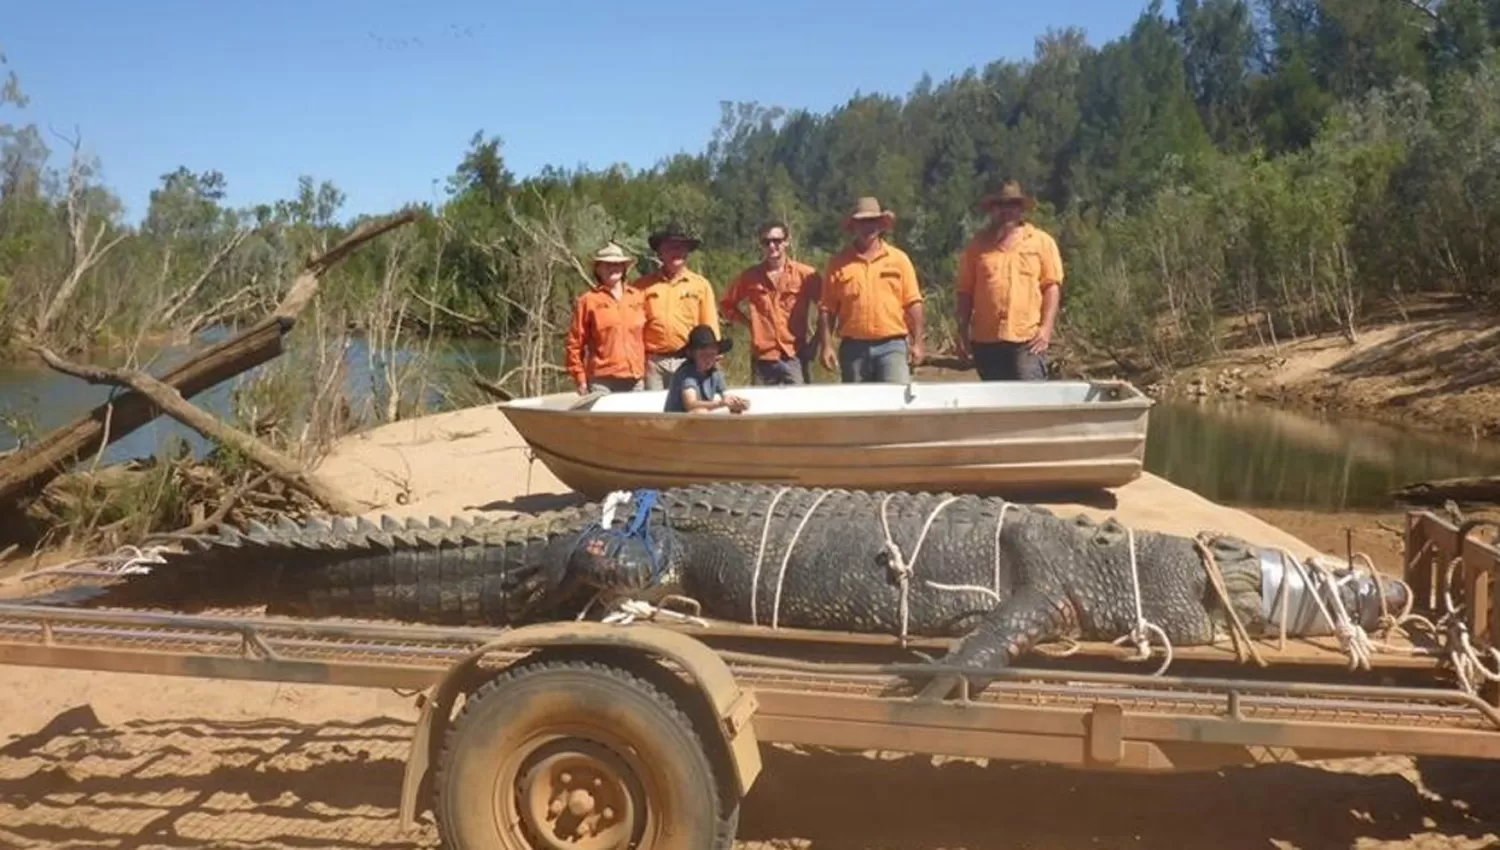 INMENSO. El cocodrilo fue hallado al norte de Australia. (CLARÍN)